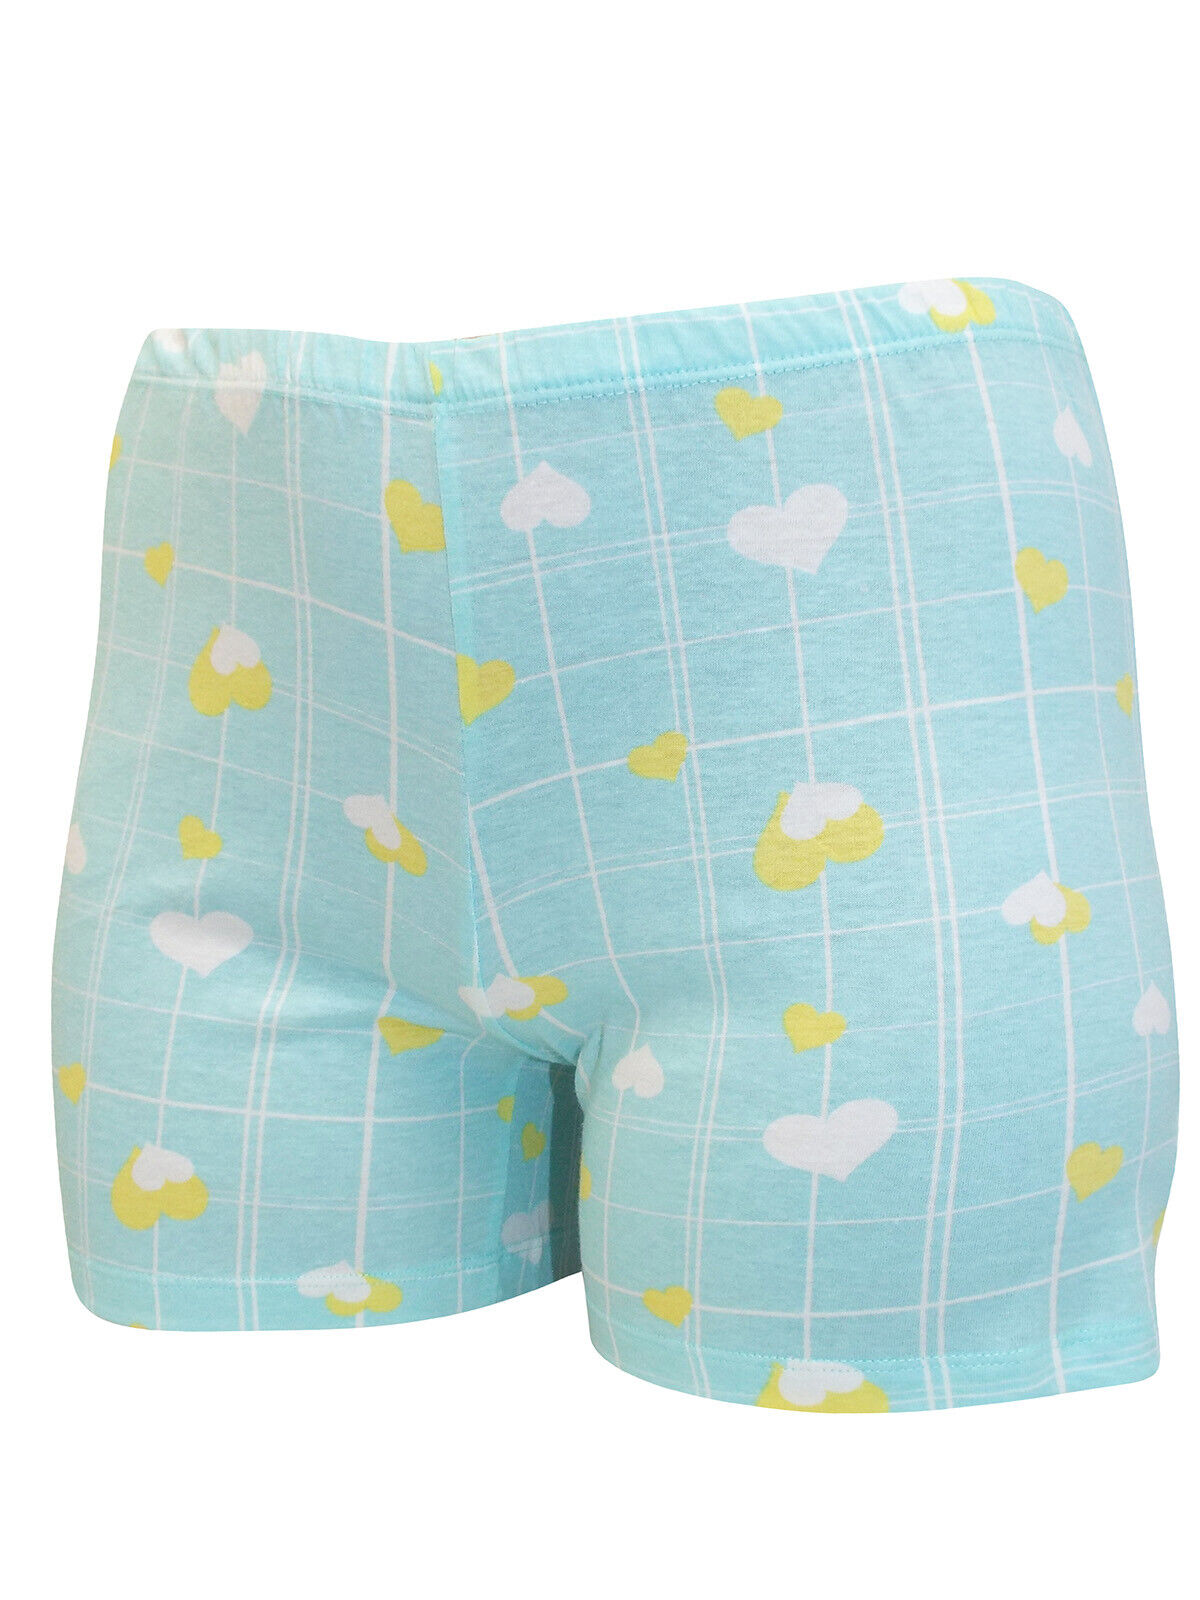 Italian Mi-a-mi Aqua Cotton Heart Frill Trim Shorts Pyjama Set 10 12 14 16 20